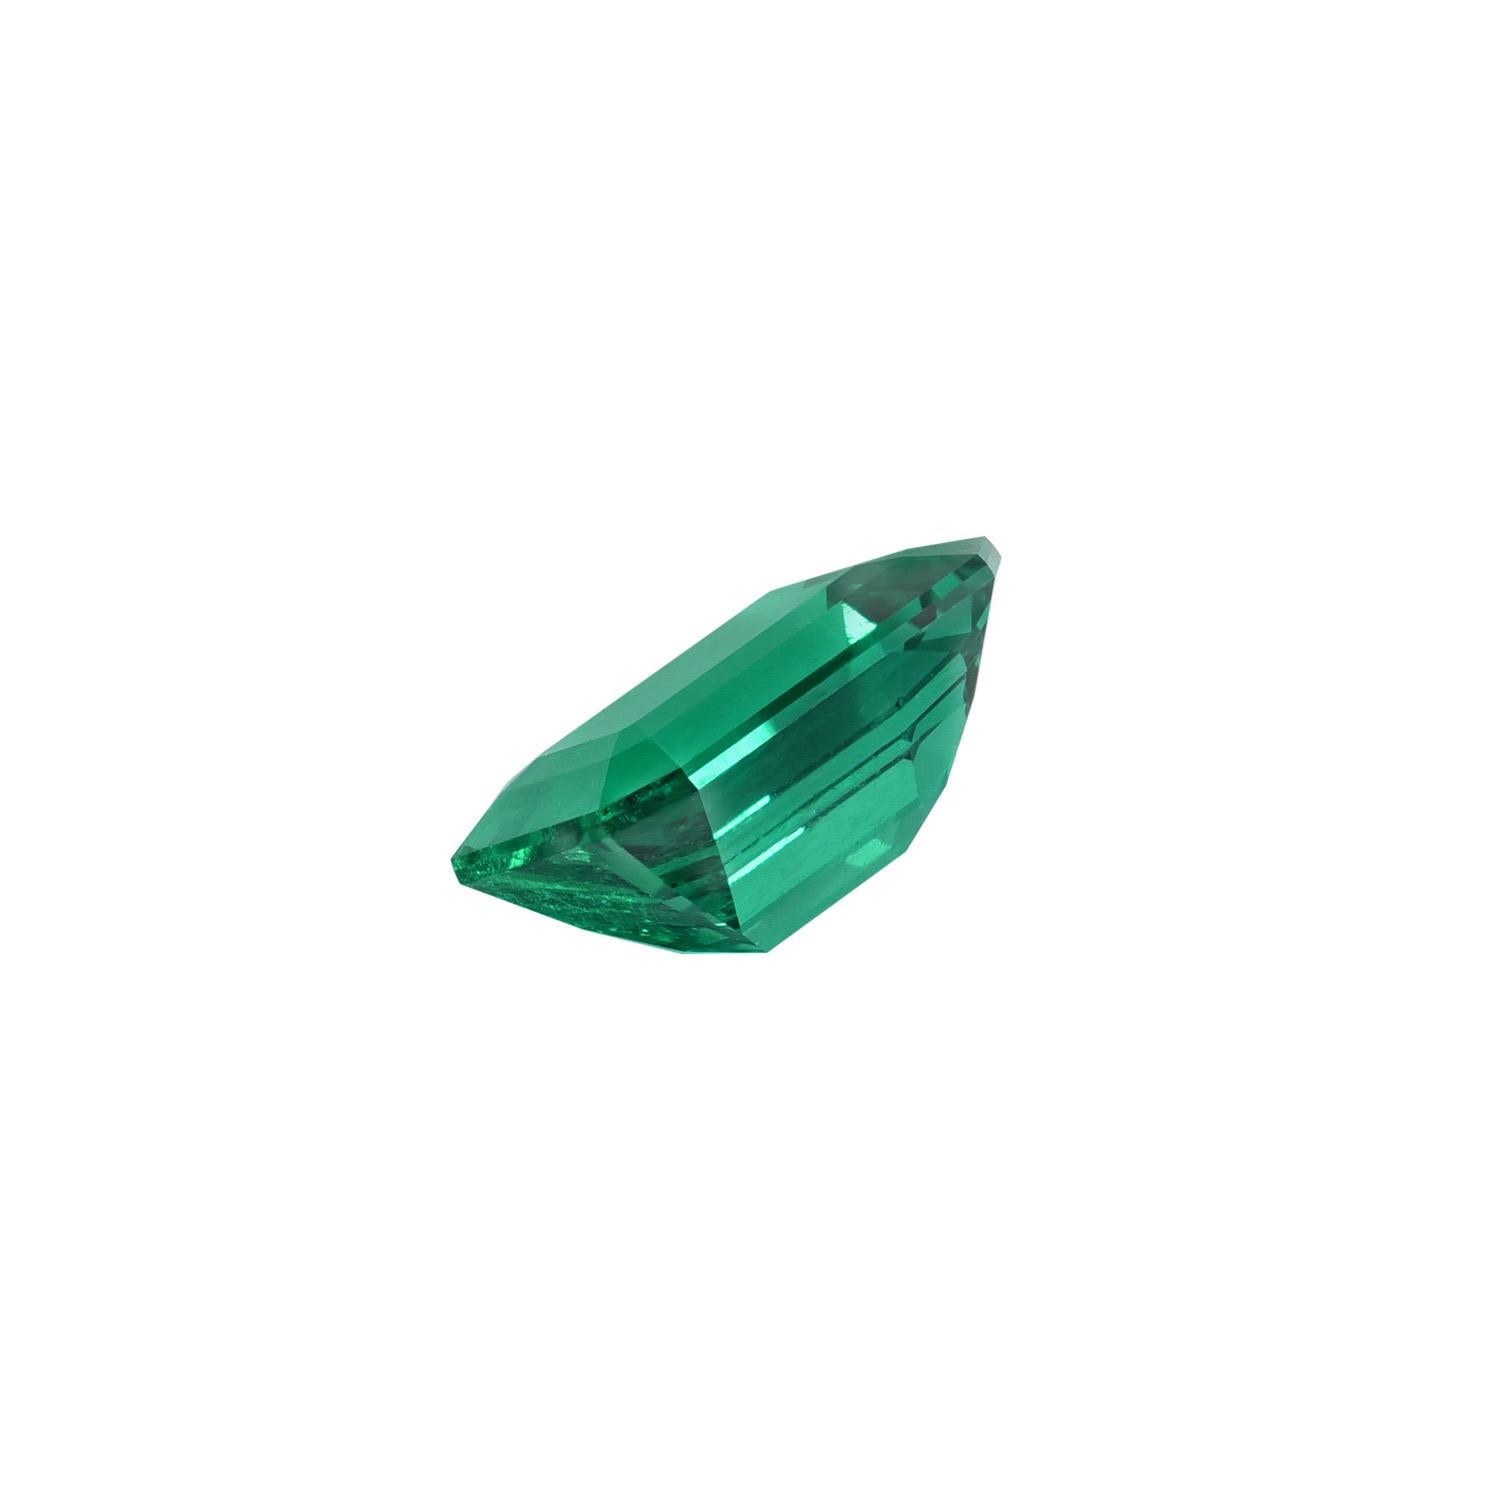 Émeraude colombienne Muzo de 2,10 carats, extrêmement rare et très prisée, offerte non montée à un collectionneur de pierres précieuses de classe mondiale. Cette émeraude non traitée, 